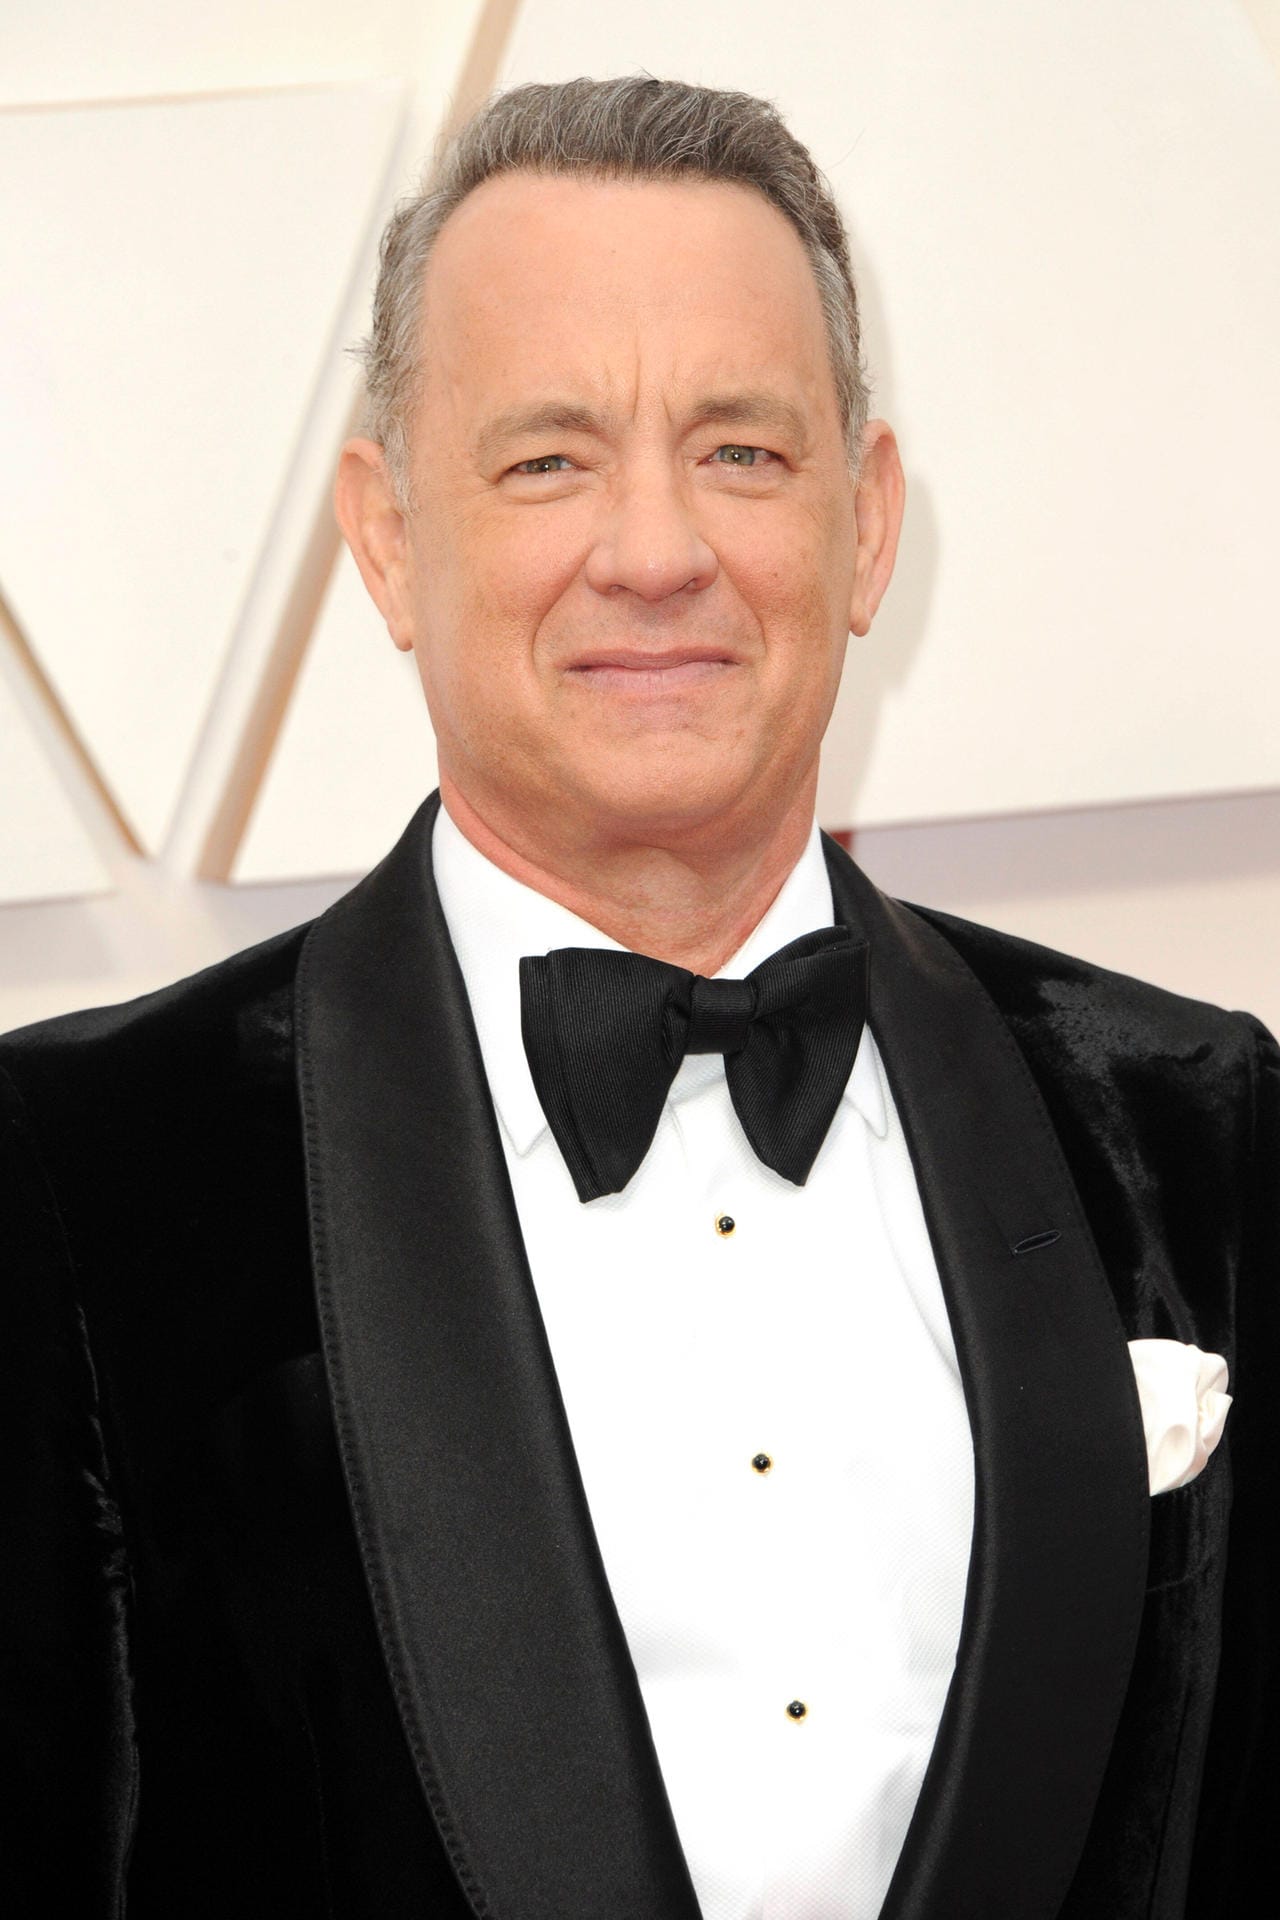 Tom Hanks: 2013 bekam der Schauspieler die Diagnose Diabetes. Er glaubt, seine Diäten für Filmrollen könnten der Auslöser gewesen sein. "Ich war ein totaler Idiot", sagte der "Forrest Gump"-Darsteller "E! News".